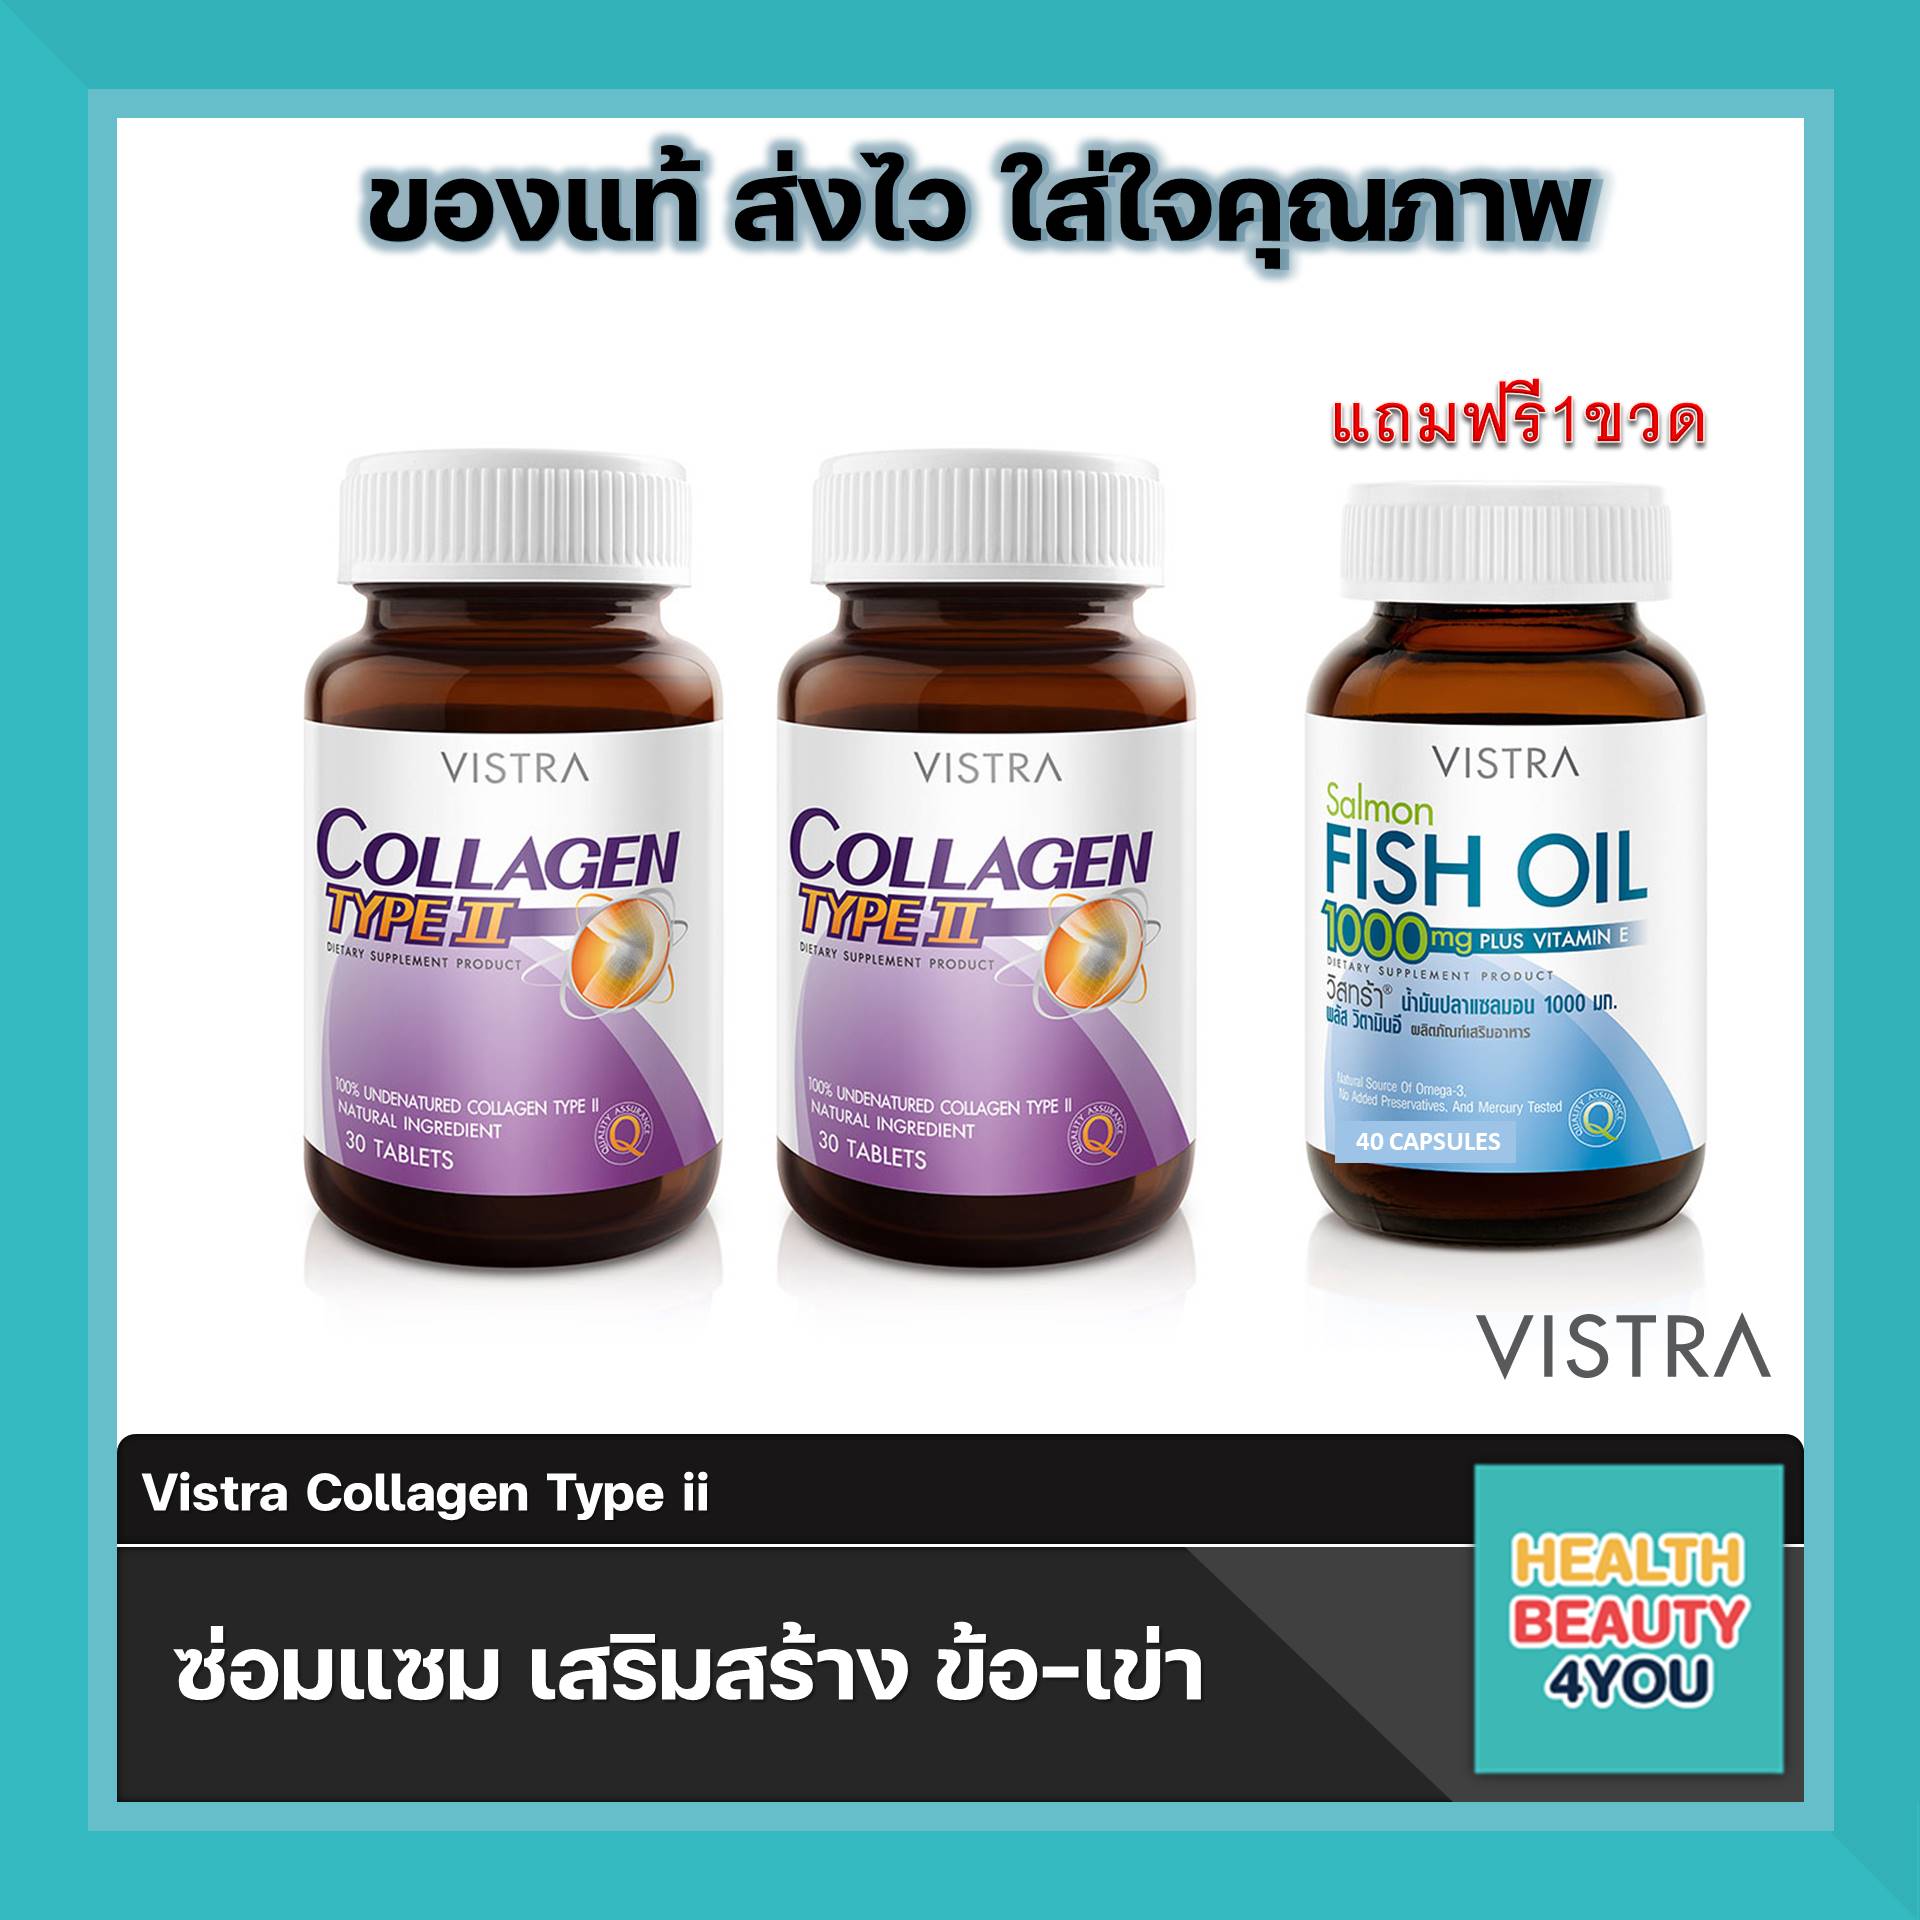 สุดคุ้ม Vistra Collagen Type II จำนวน 2 ขวด แถมฟรี Vistra Salmon Fish Oil จำนวน 40 เม็ด